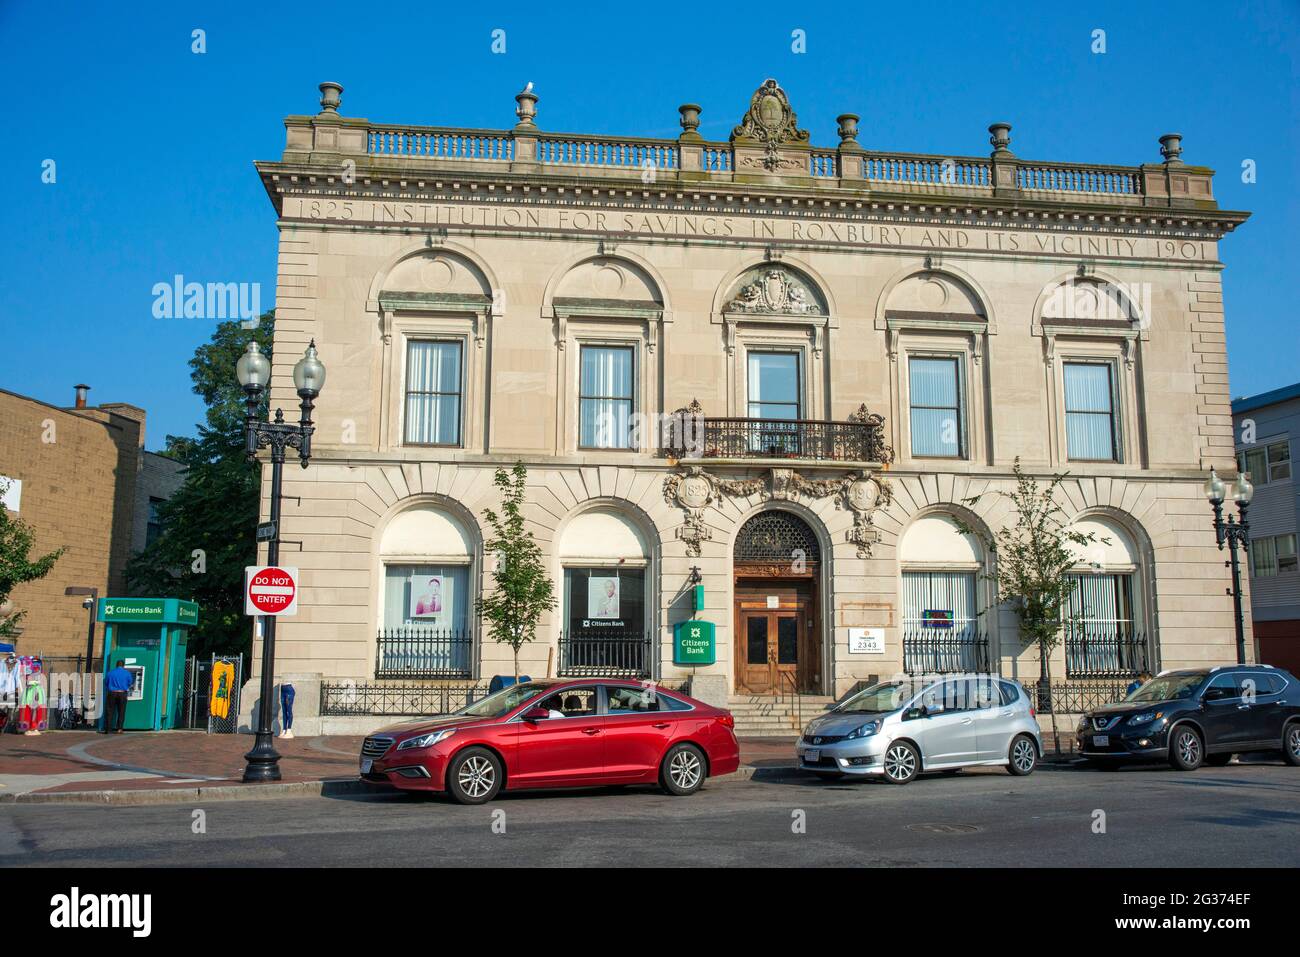 Citizens Bank edificio storico 1825 1901 a Roxbury Boston, Massachusetts USA Foto Stock